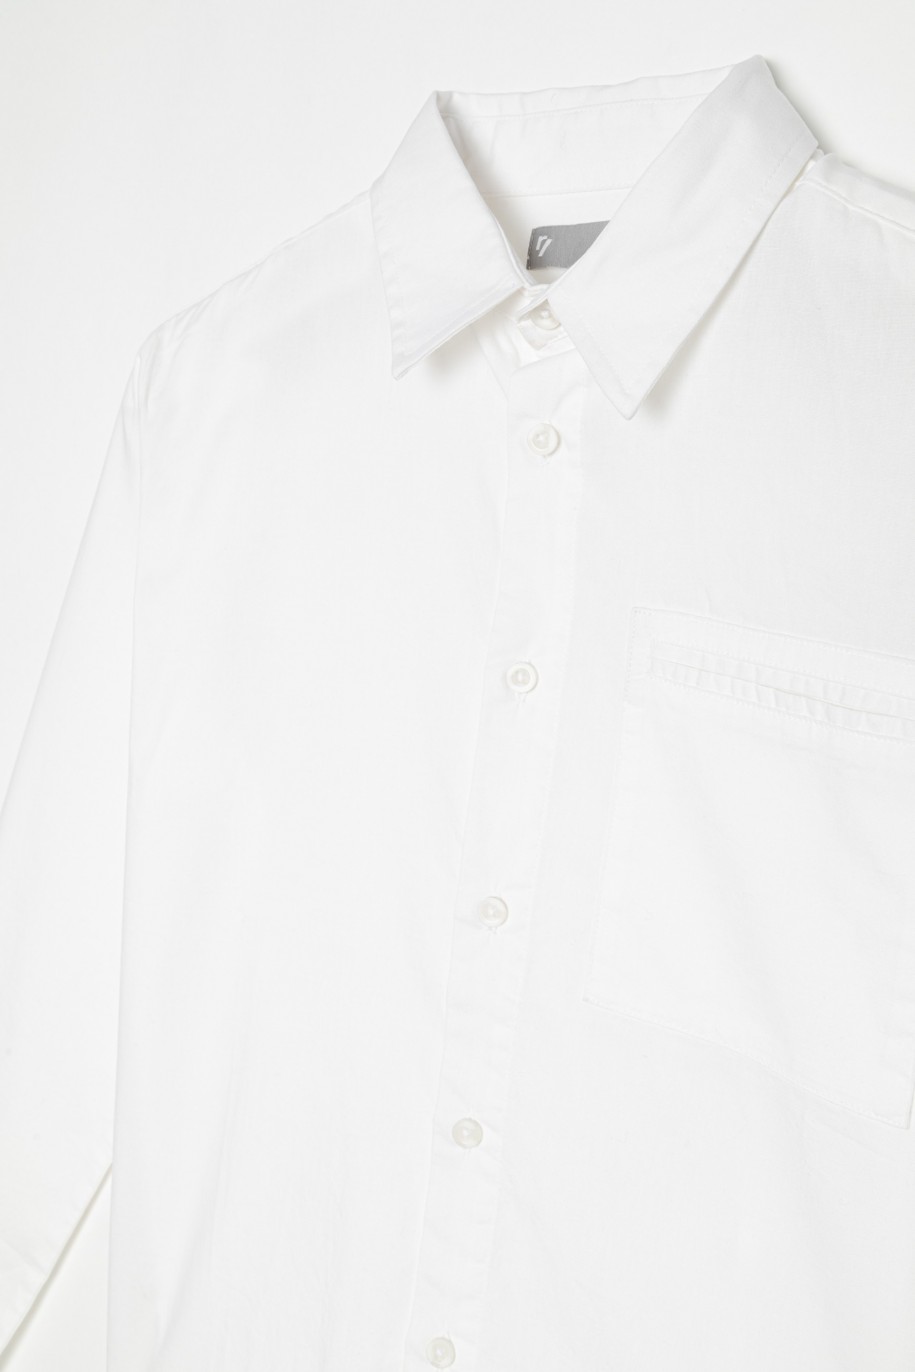 Elegancka biała koszula dla chłopaka - 22238